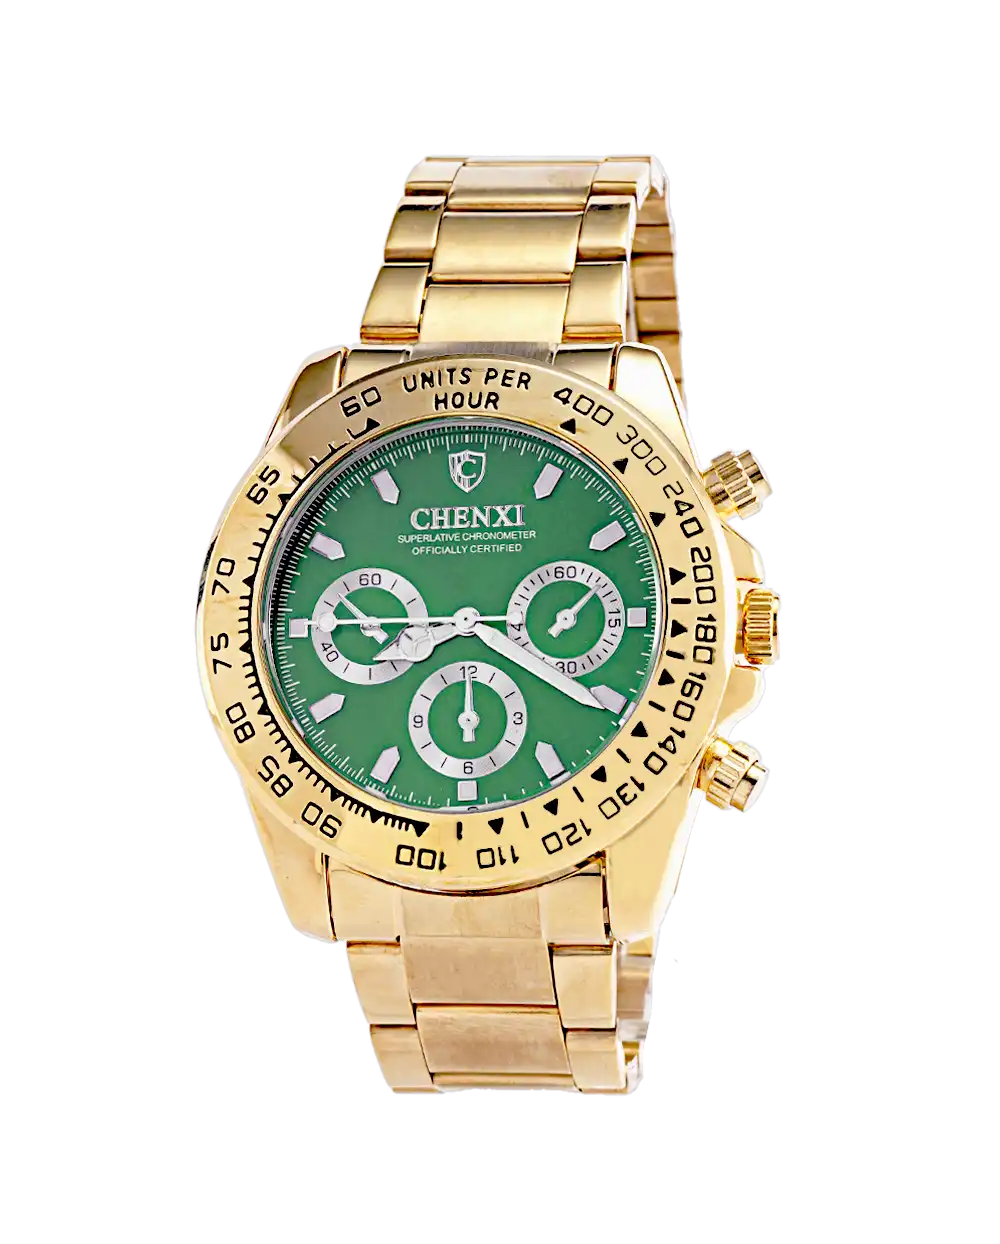 خرید ساعت مچی مردانه چانگ شی CHENXI مدل 1666 صفحه سبز با بهترین قیمت به همراه جعبه ی ساعت و ارسال رایگان به سراسر ایران درب منزل